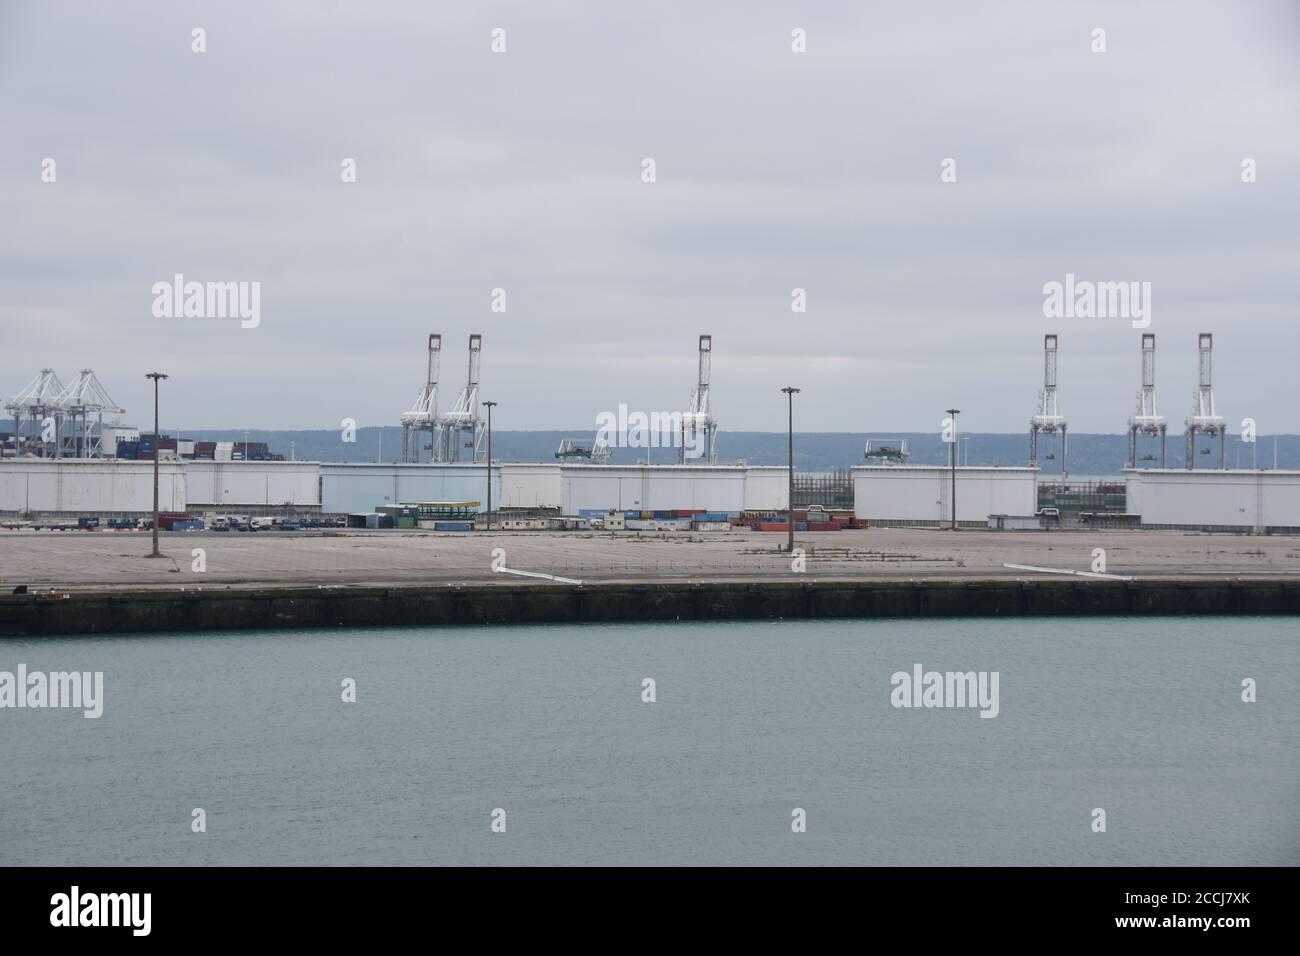 Vider le port du Havre en France avec des grues portiques à élévation sans mouvement en raison de la réduction du trafic dans le port causée par le coronavirus, COVID-19. Banque D'Images